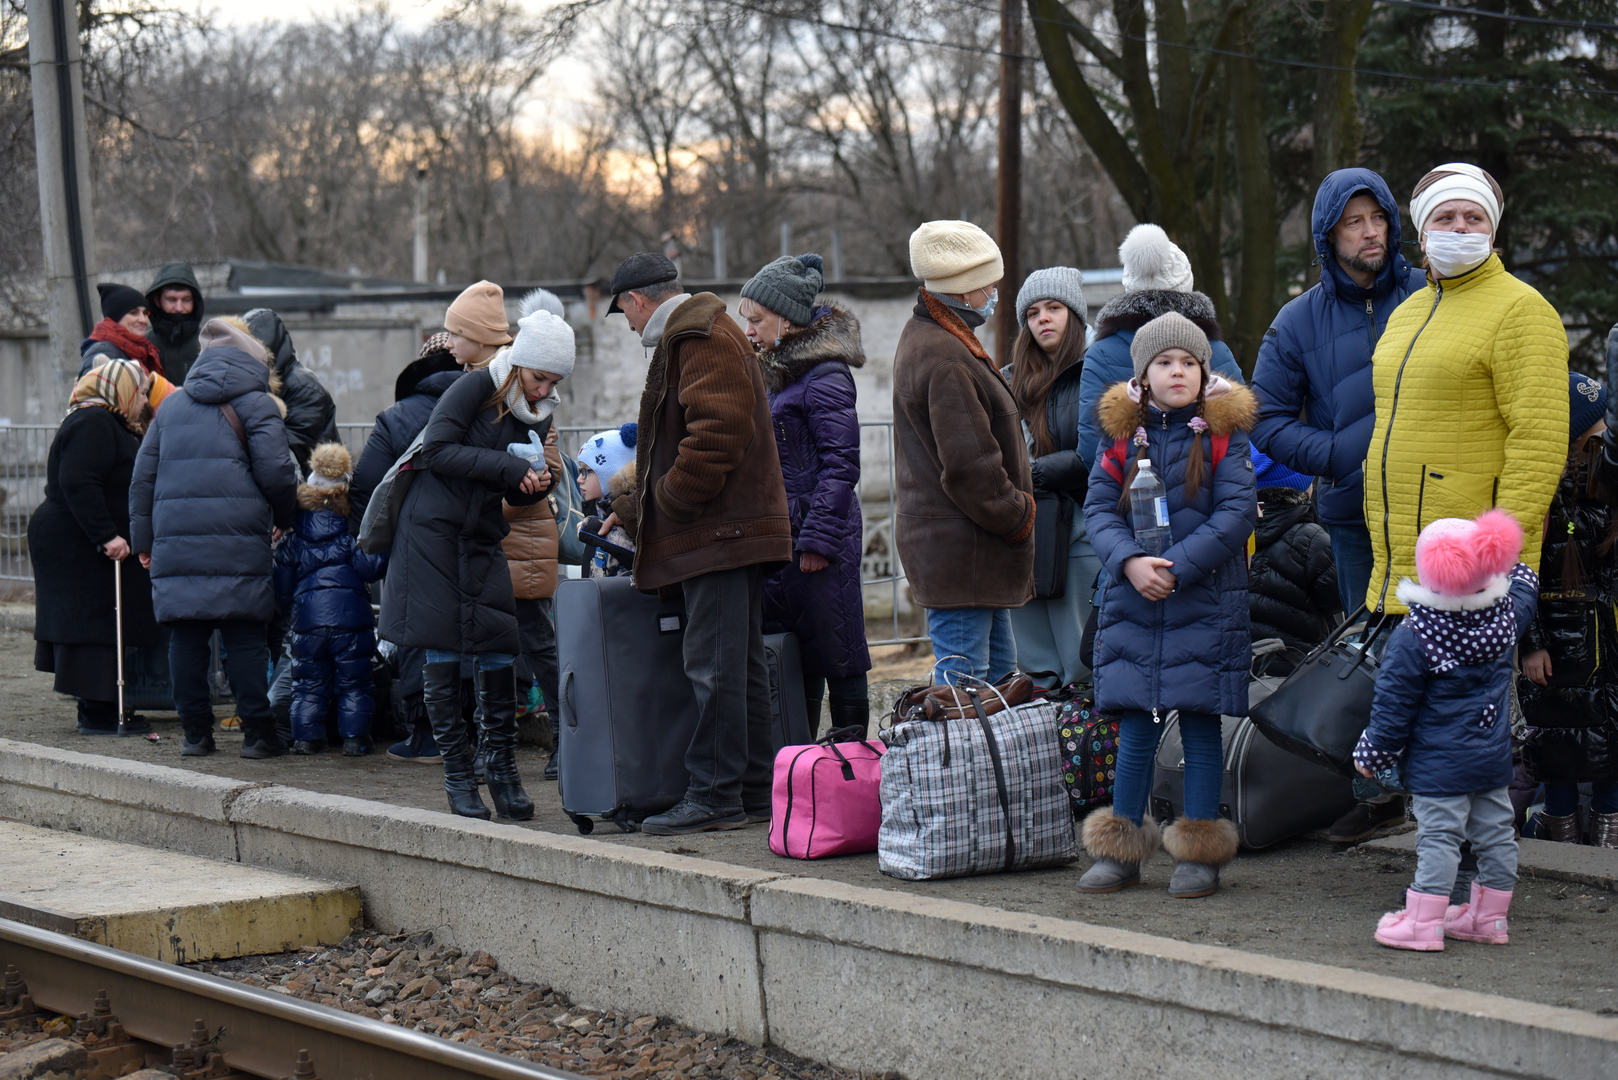 ليتوانيا: بلدان البلطيق تتوجه بنداء إلى مجلس الأمن الدولي بشأن ممرات إنسانية في أوكرانيا